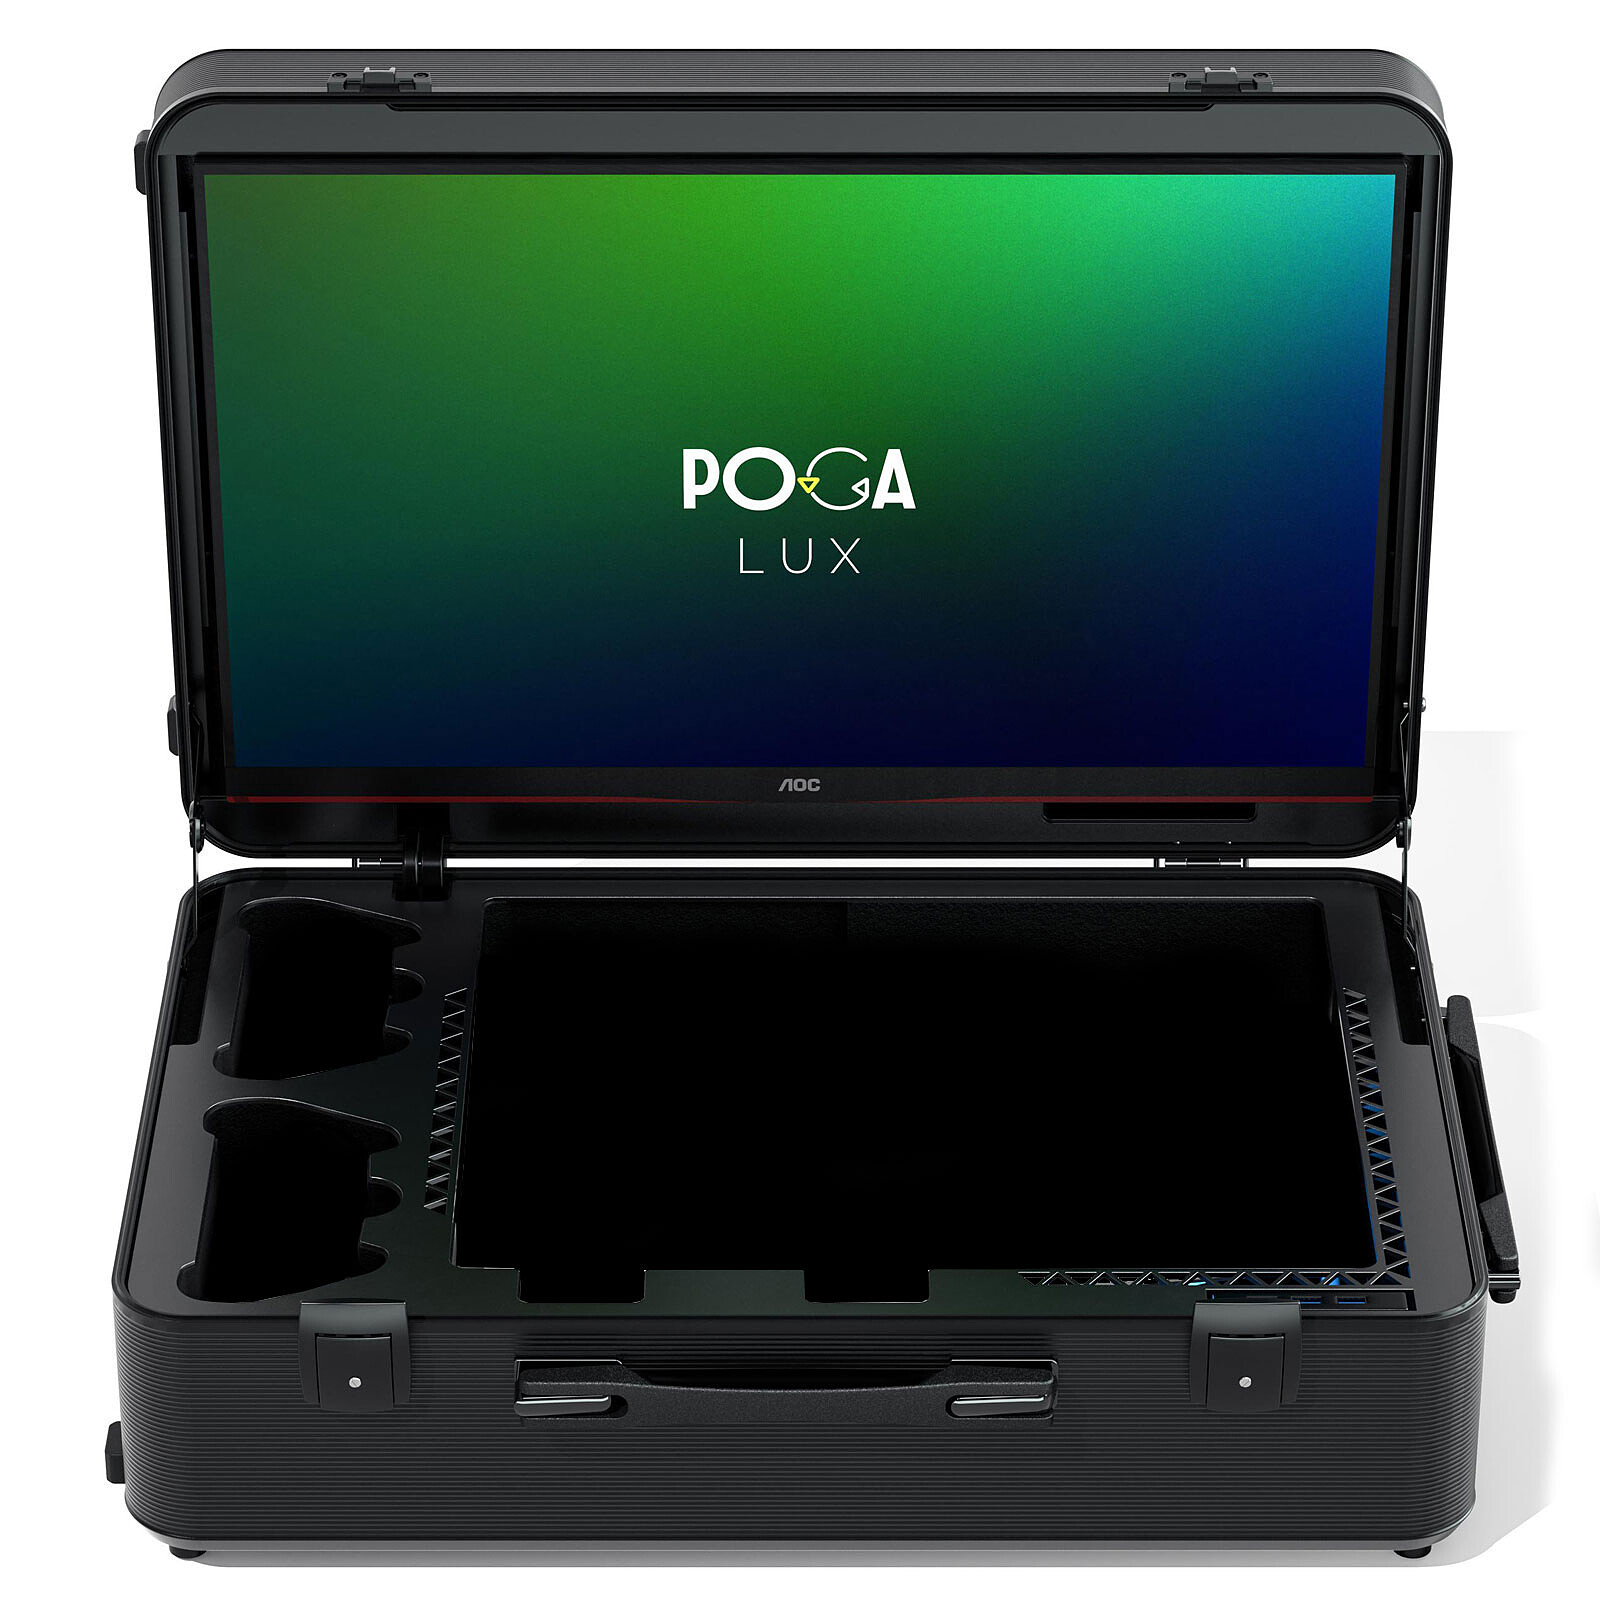 POGA Lux PS5 (Nero) - Accessori PS5 - Garanzia 3 anni LDLC